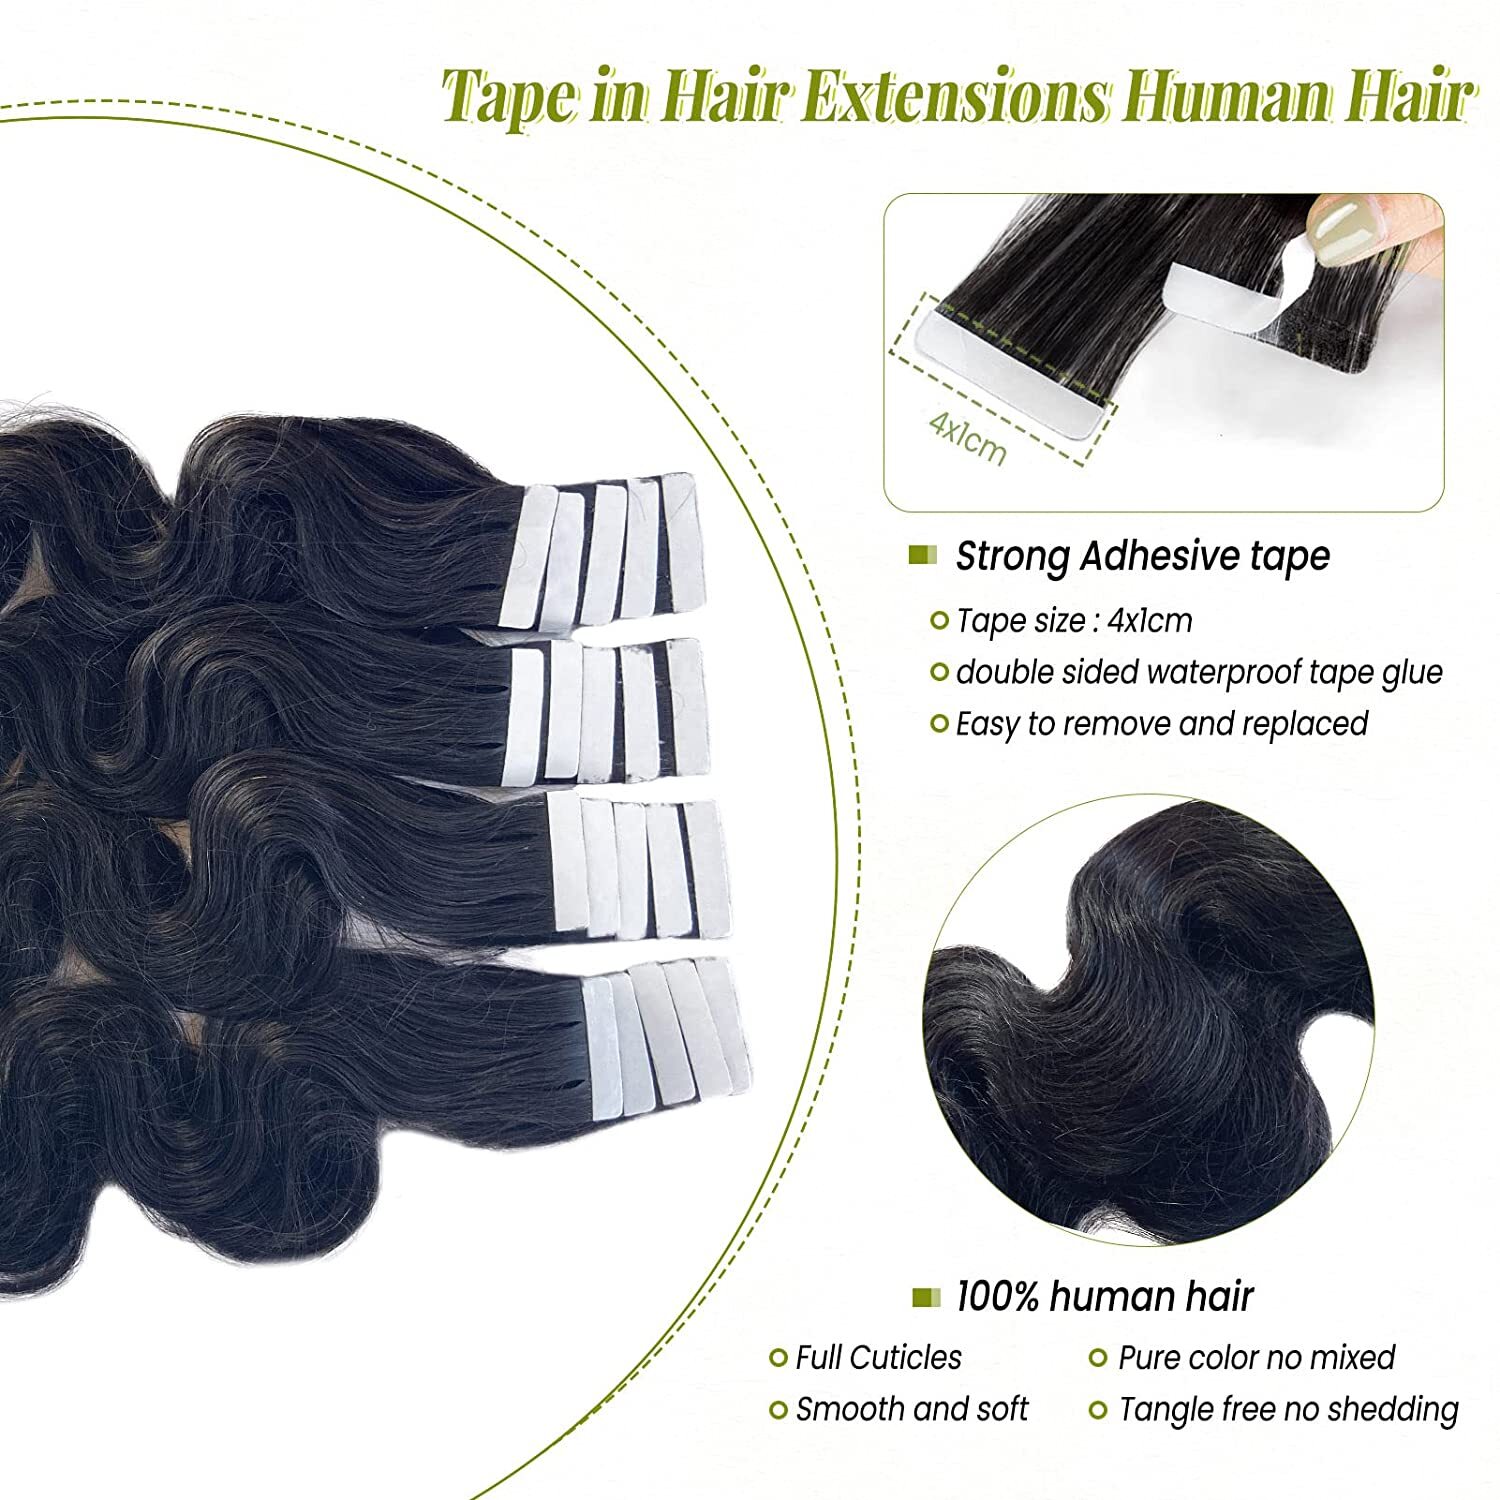 Brazilian Virgin Human Hair Extensions